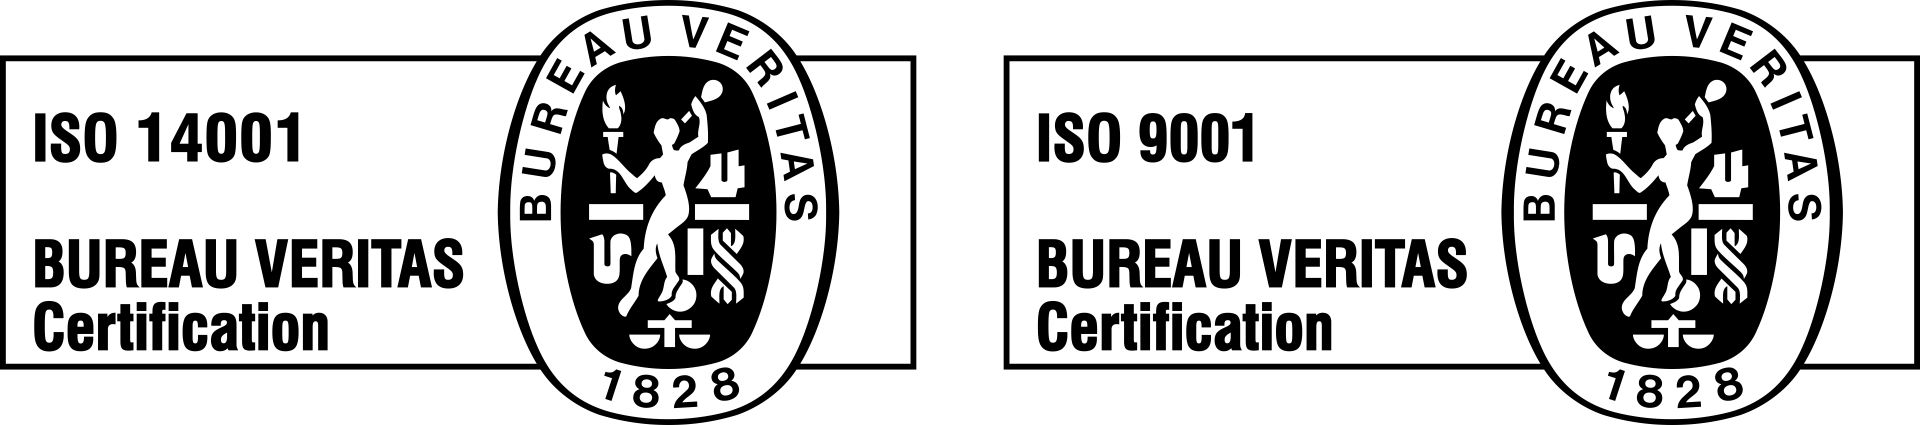 Ооо мкк веритас. Бюро Веритас. ISO 9001 Bureau veritas Certification. Знак Bureau veritas. Бюро Веритас ISO 14001:2015.